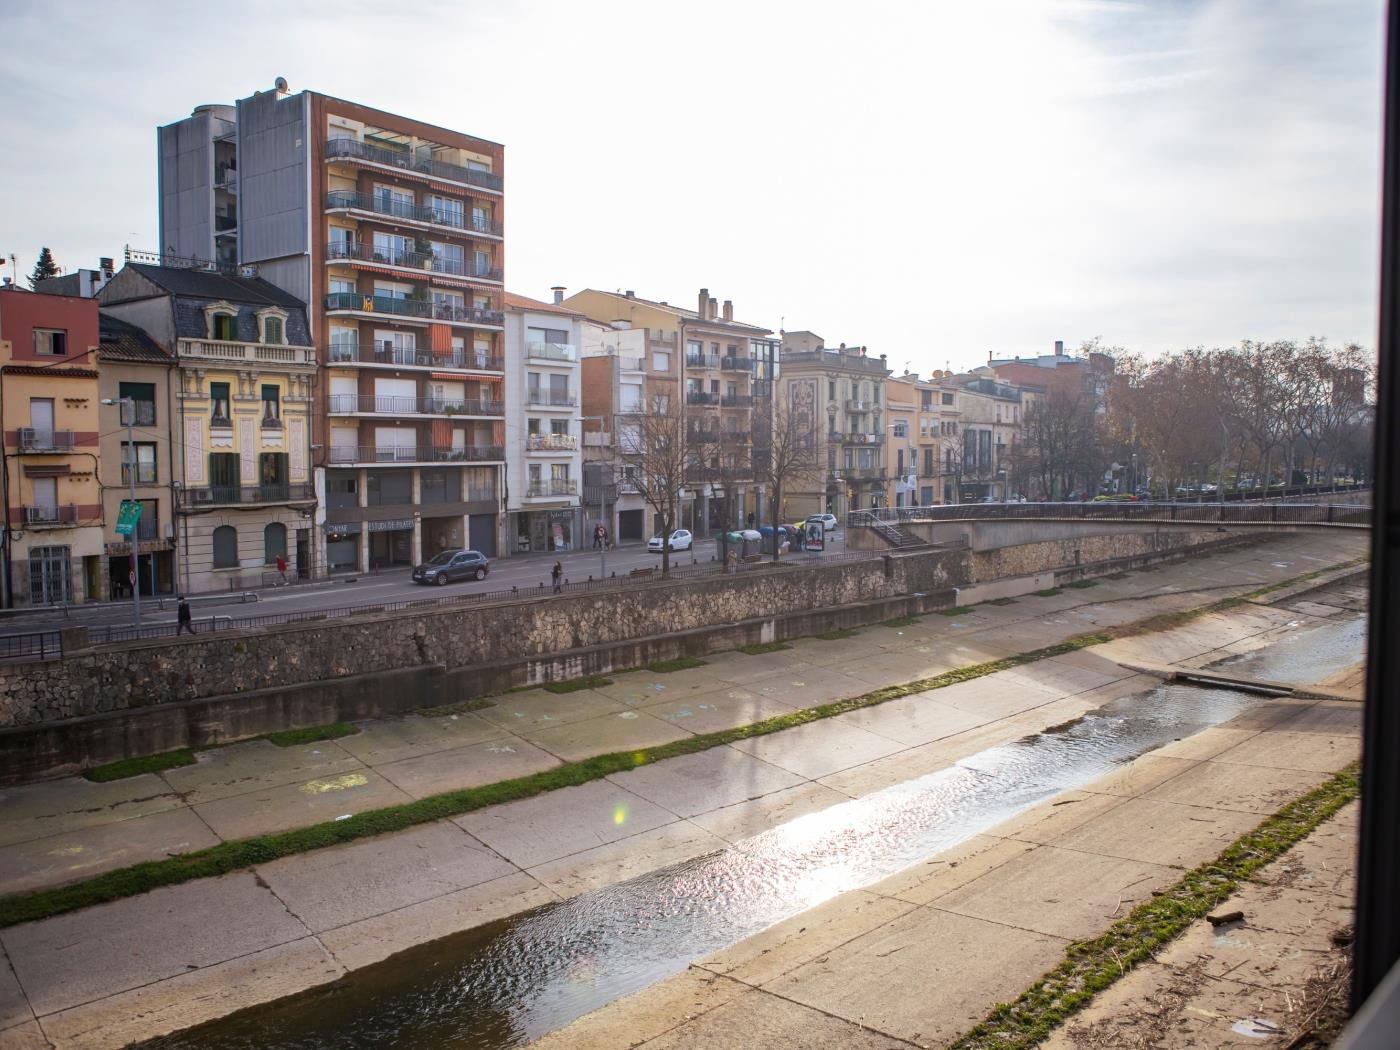 Bravisimo Riu Onyar - Apartament de vacances a Girona | Bravissimo a Girona